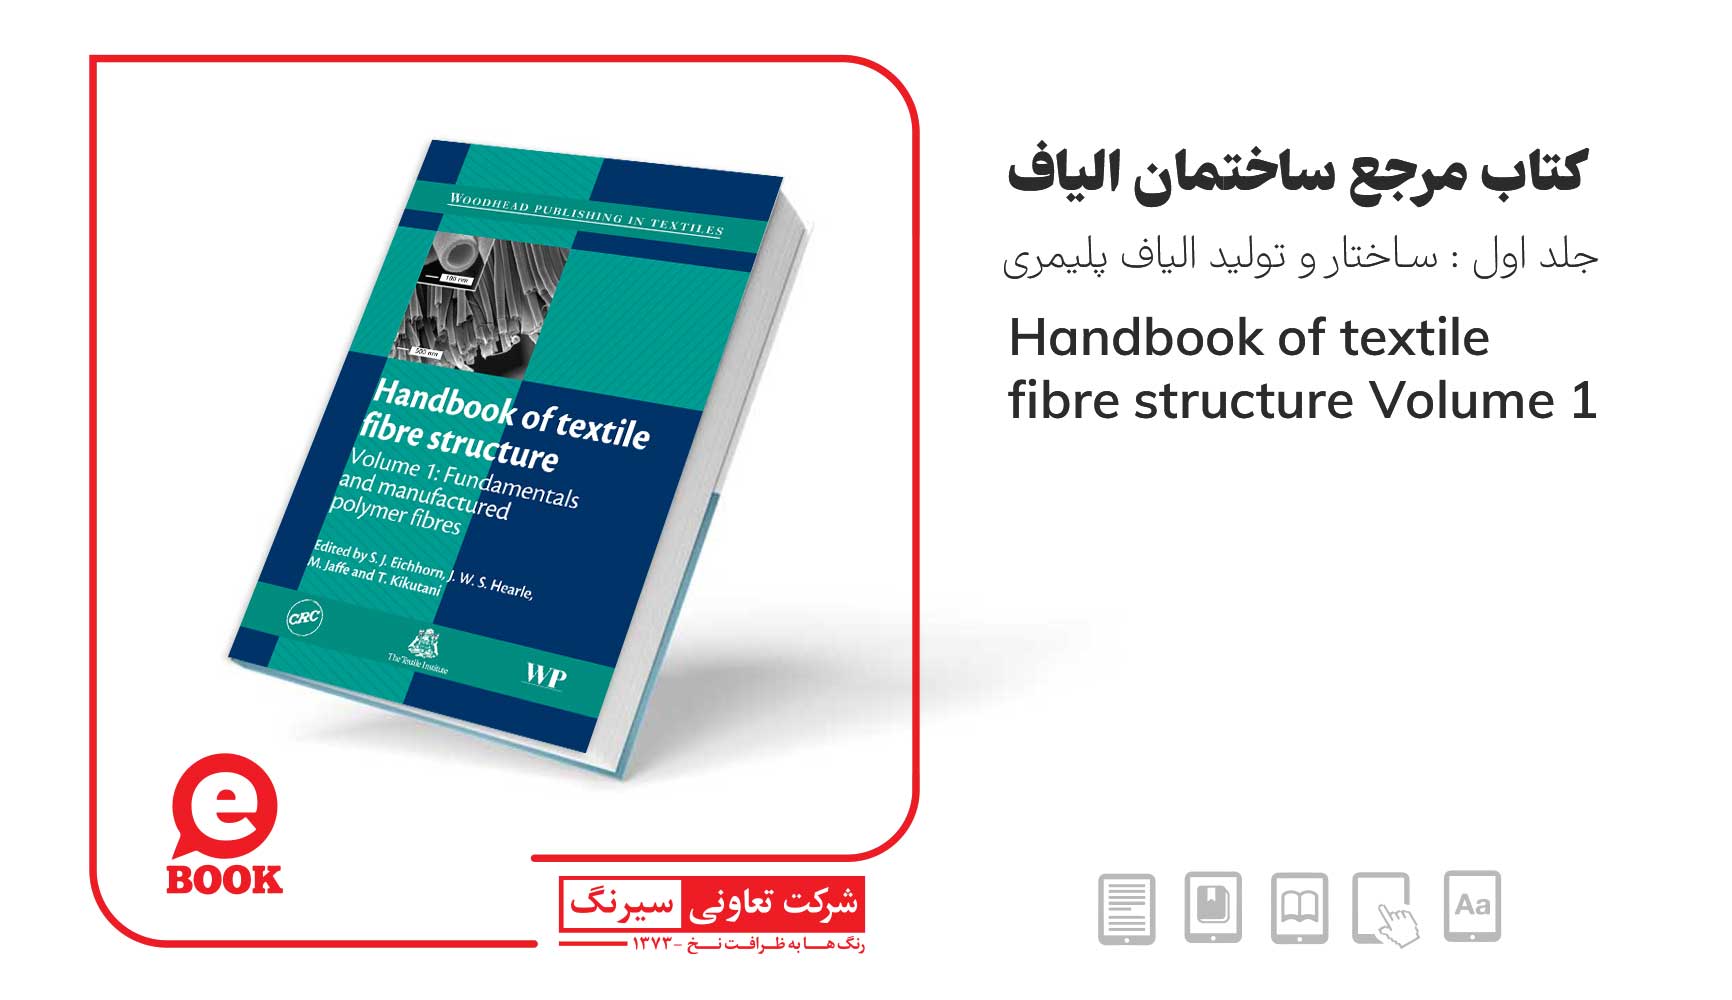 کتاب ساختمان الیاف جلد اول : ساختار و تولید الیاف پلیمری